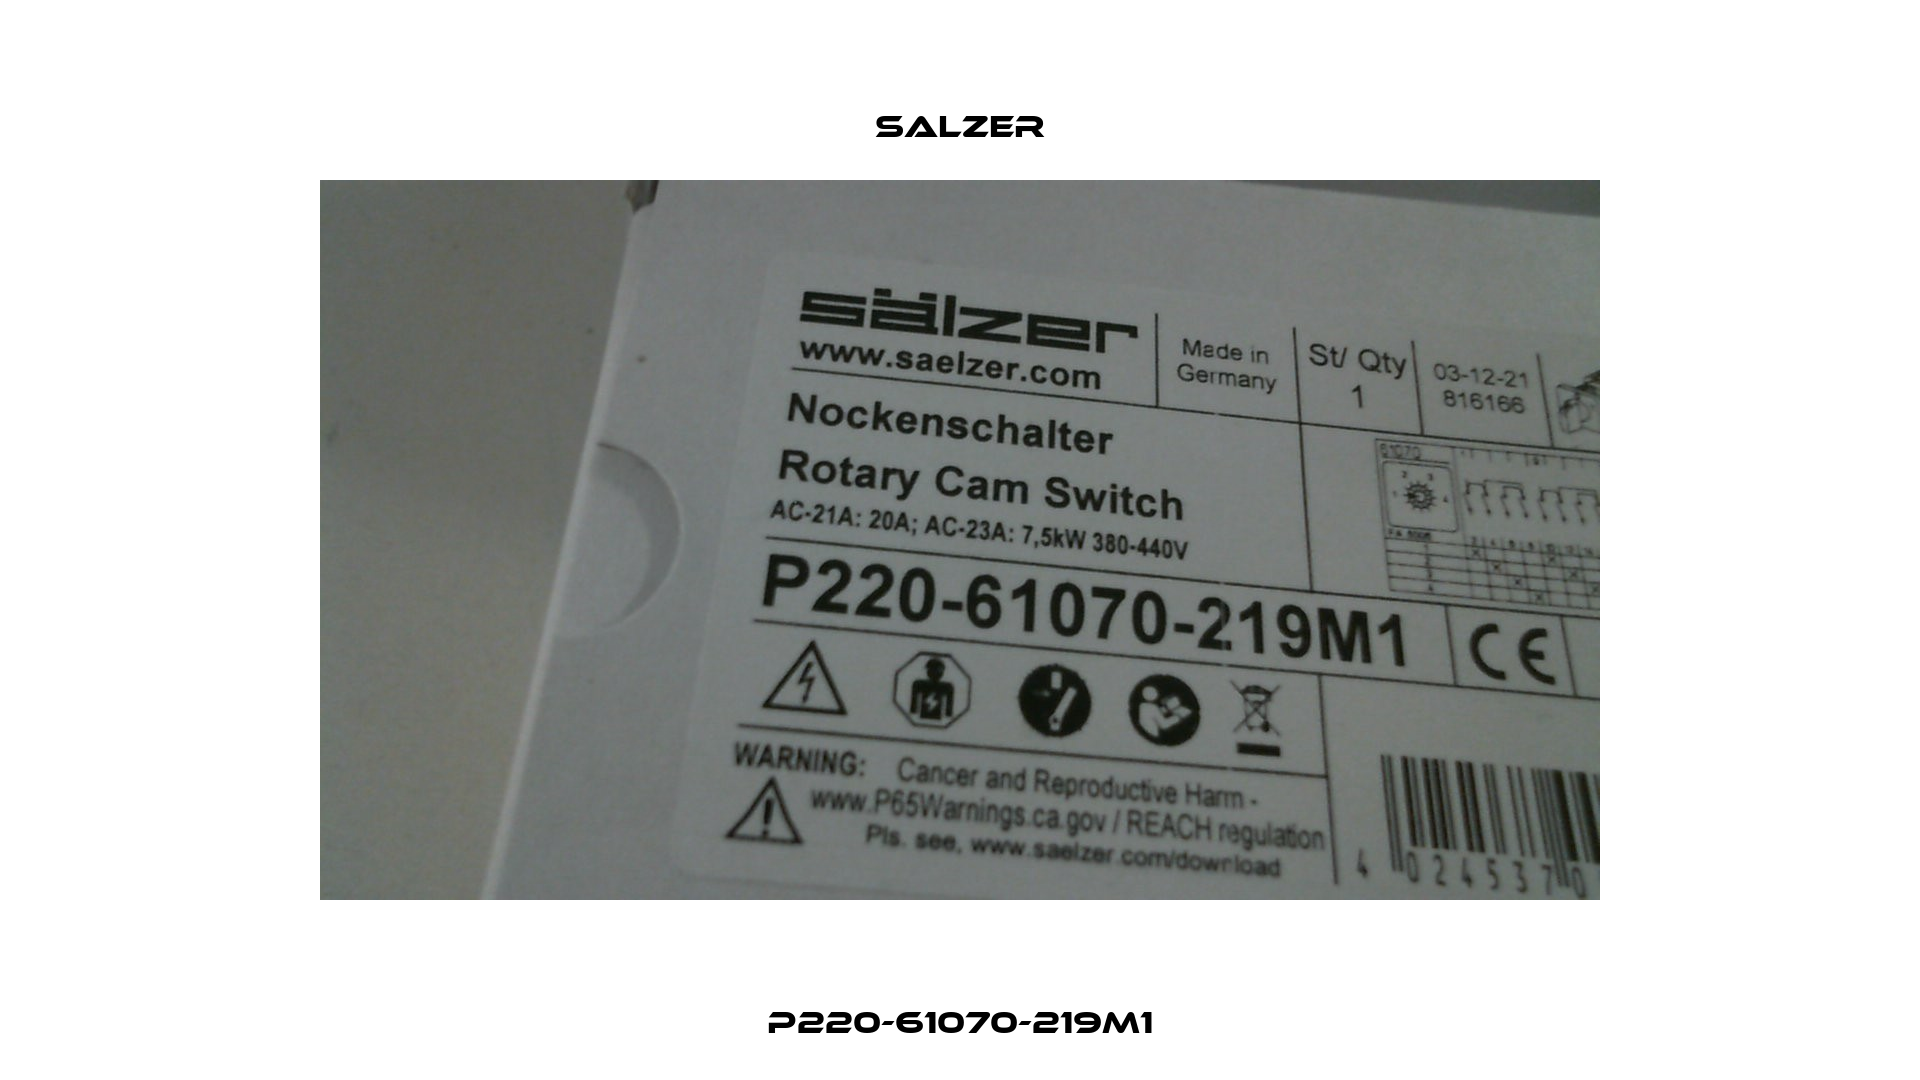 P220-61070-219M1 Salzer